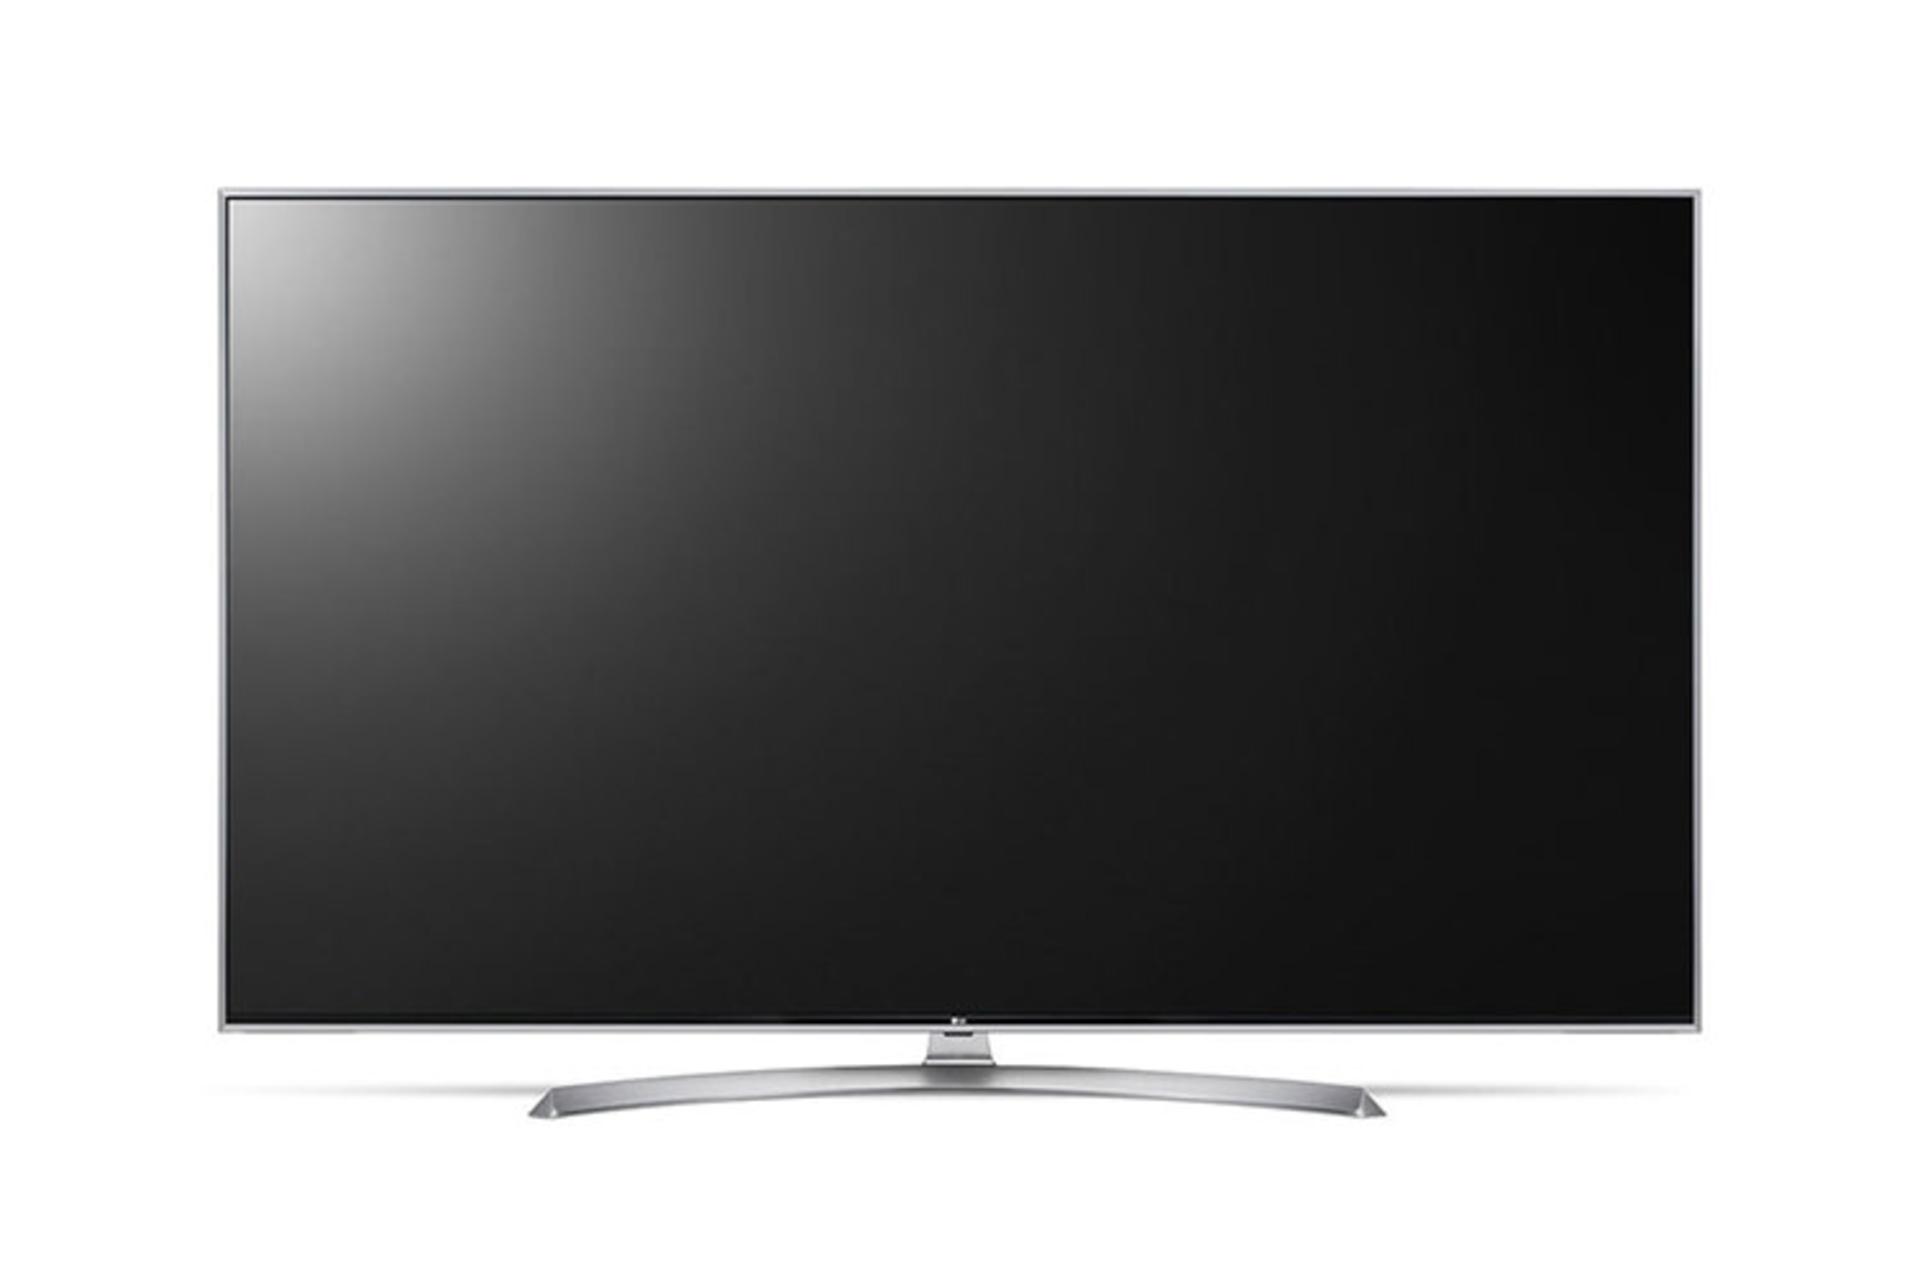 نمای جلوی تلویزیون ال جی UK7700 مدل 55 اینچ با رنگ نقره‌ای و صفحه خاموش